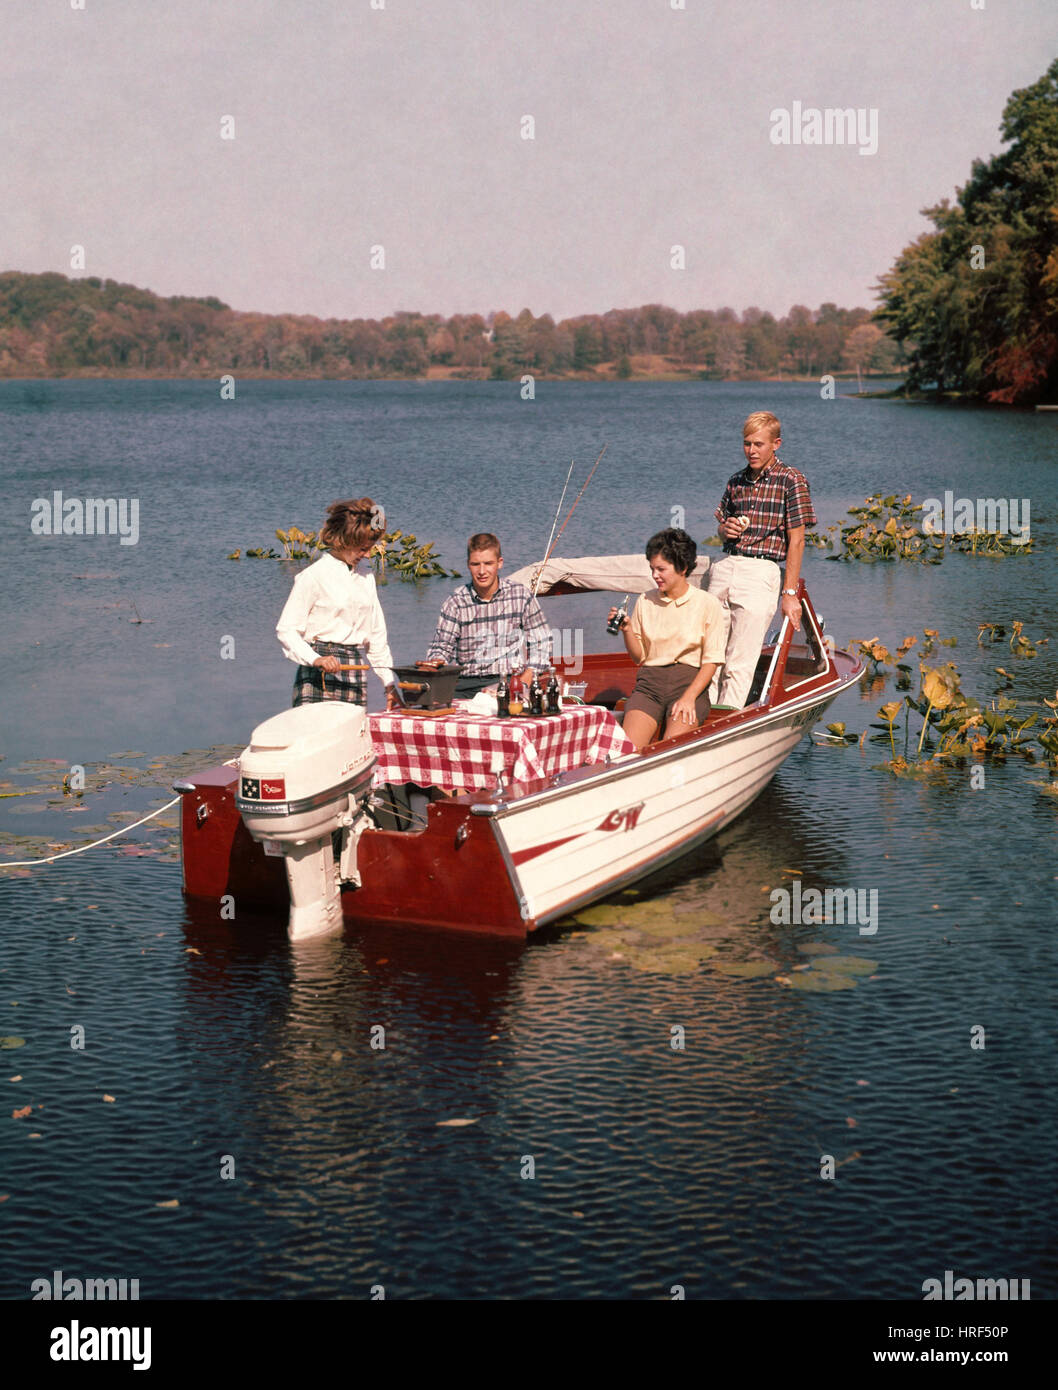 Picknick auf einem Boot, 50er Jahre Americana Stockfoto